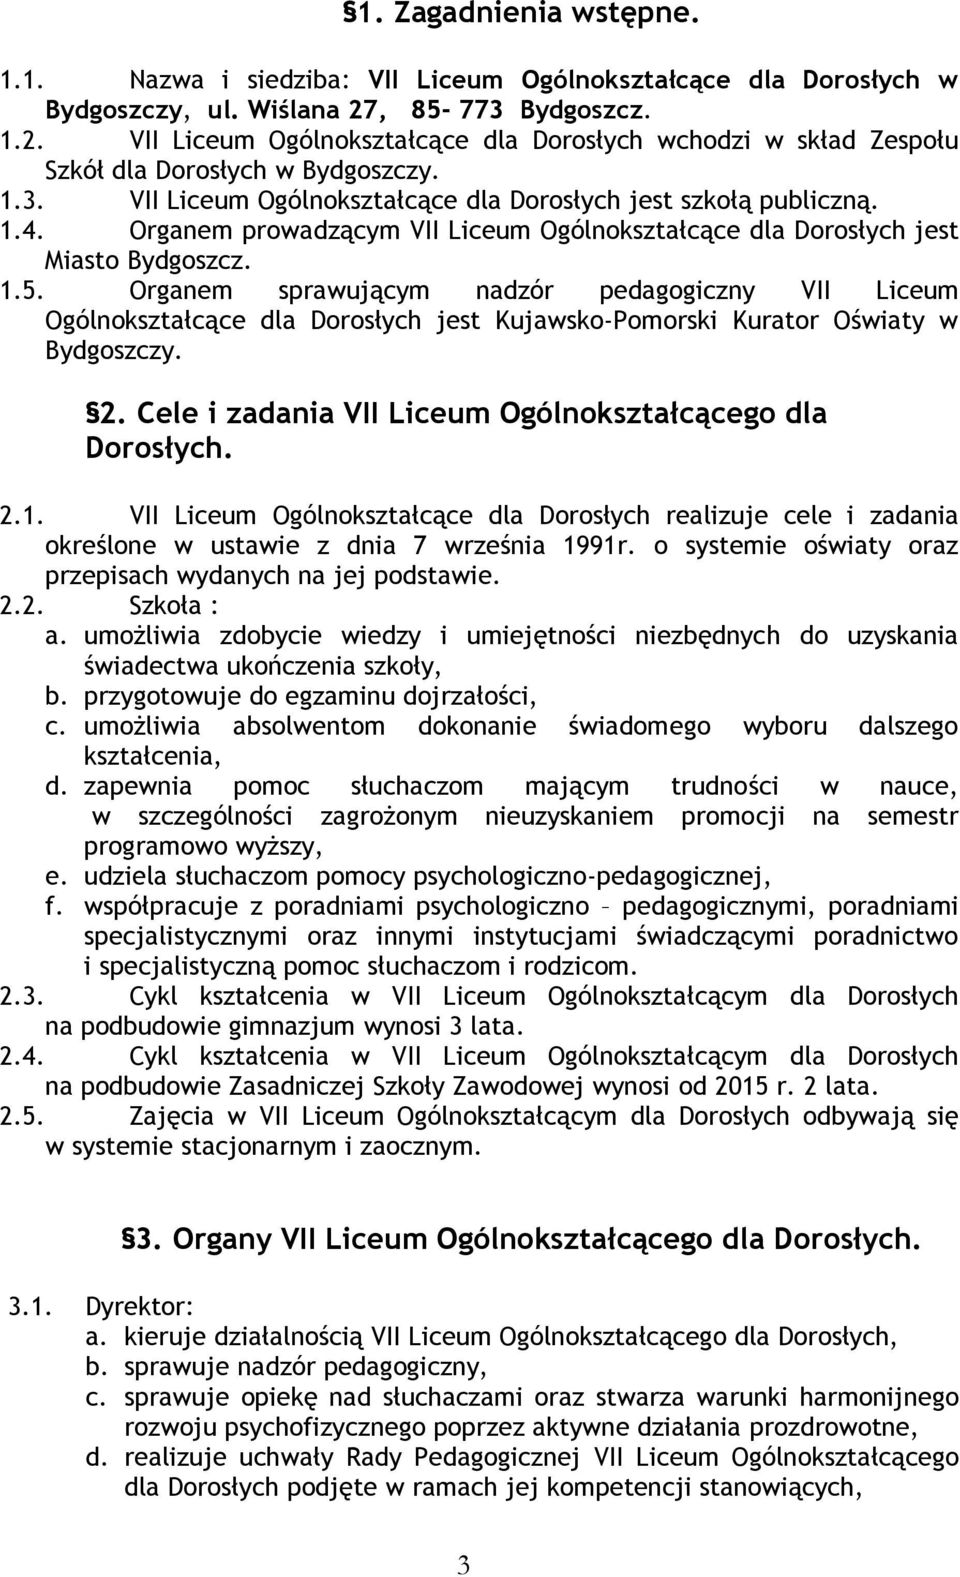 Organem prowadzącym VII Liceum Ogólnokształcące dla Dorosłych jest Miasto Bydgoszcz. 1.5.